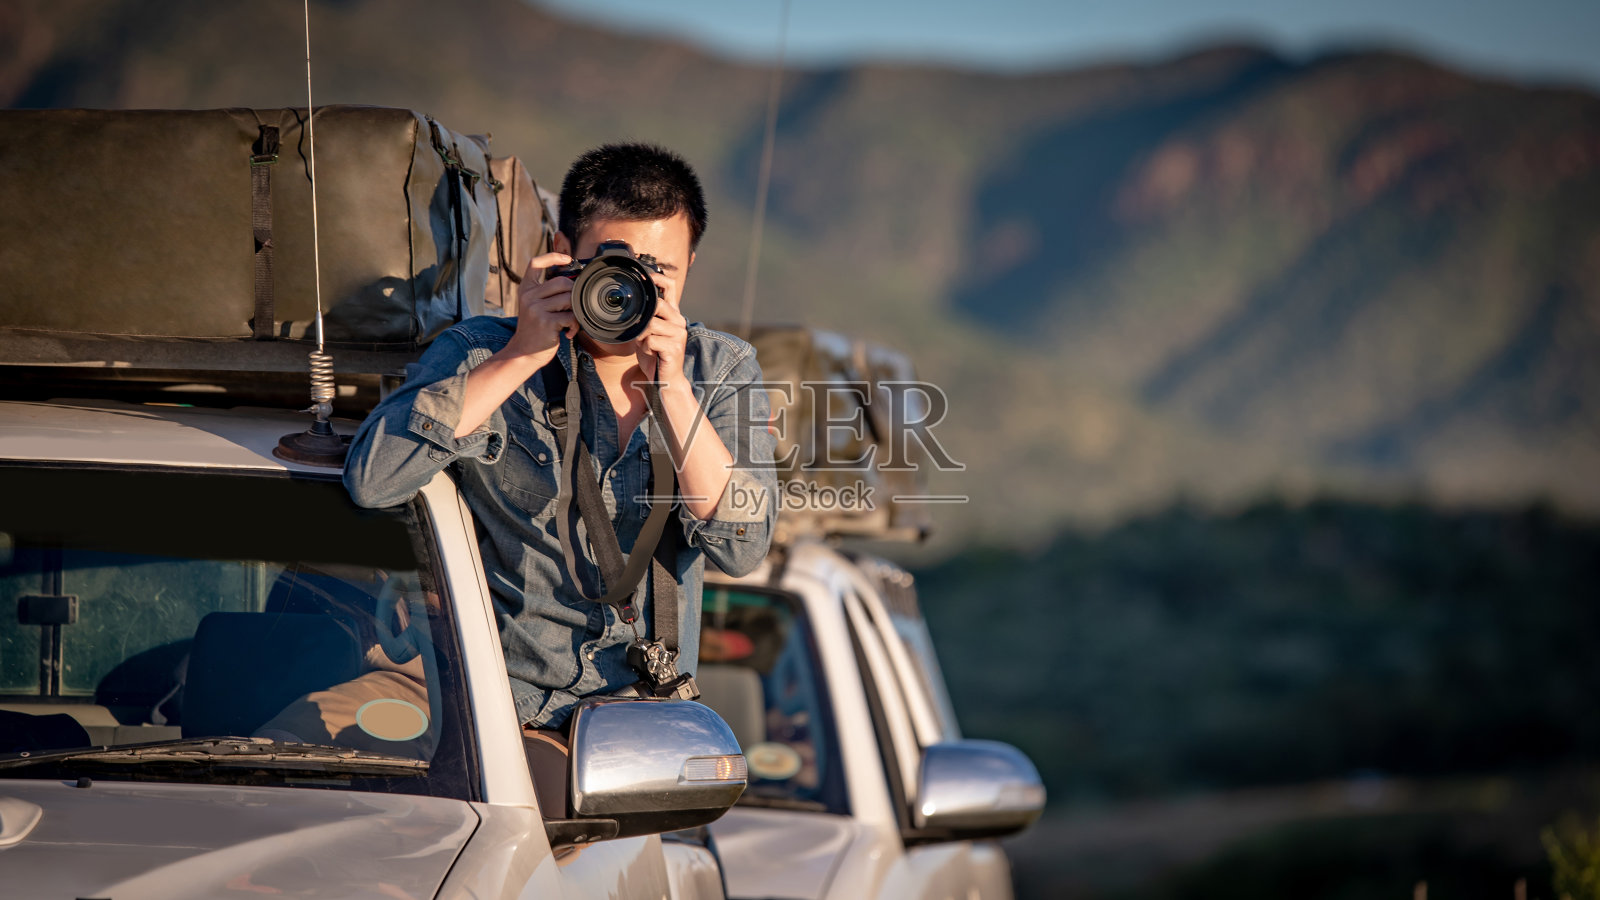 年轻的亚洲男子旅行者兼摄影师坐在车窗上拍摄非洲纳米比亚公路旅行的照片。旅行摄影的概念照片摄影图片